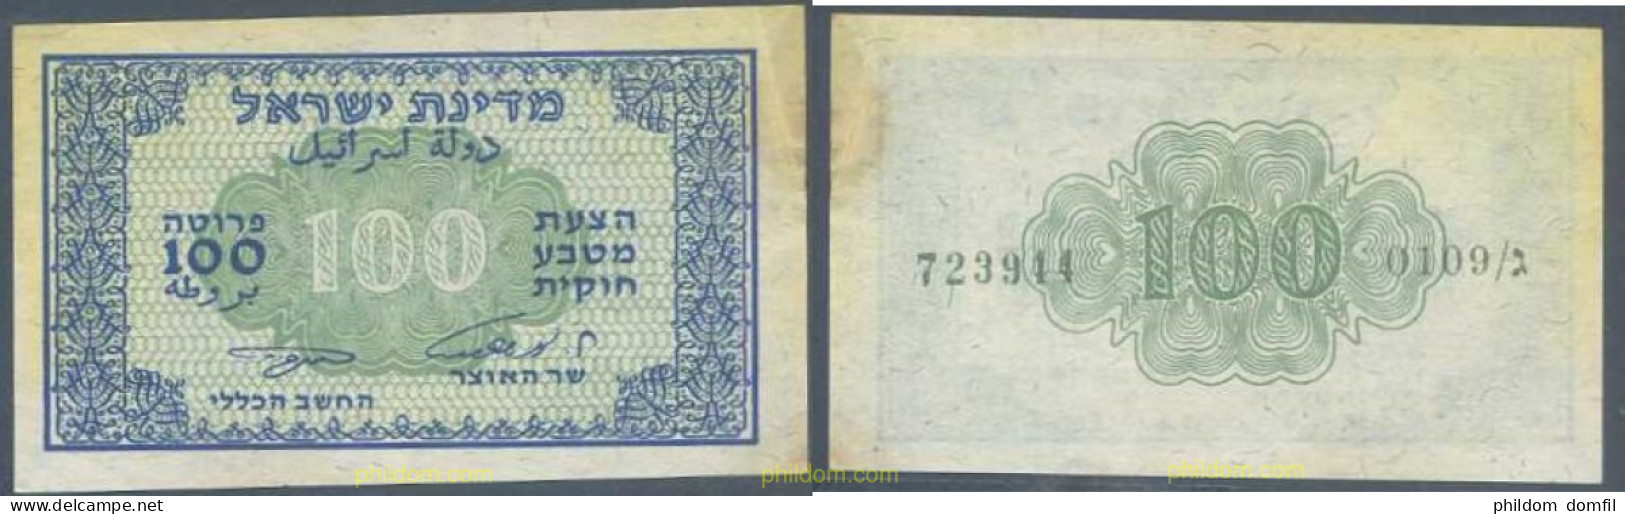 5368 ISRAEL 1952 ISRAEL 100 PRUTA 1952 FRACTIONAL CURRENCY ESHKOL ZAGAGI - Israel